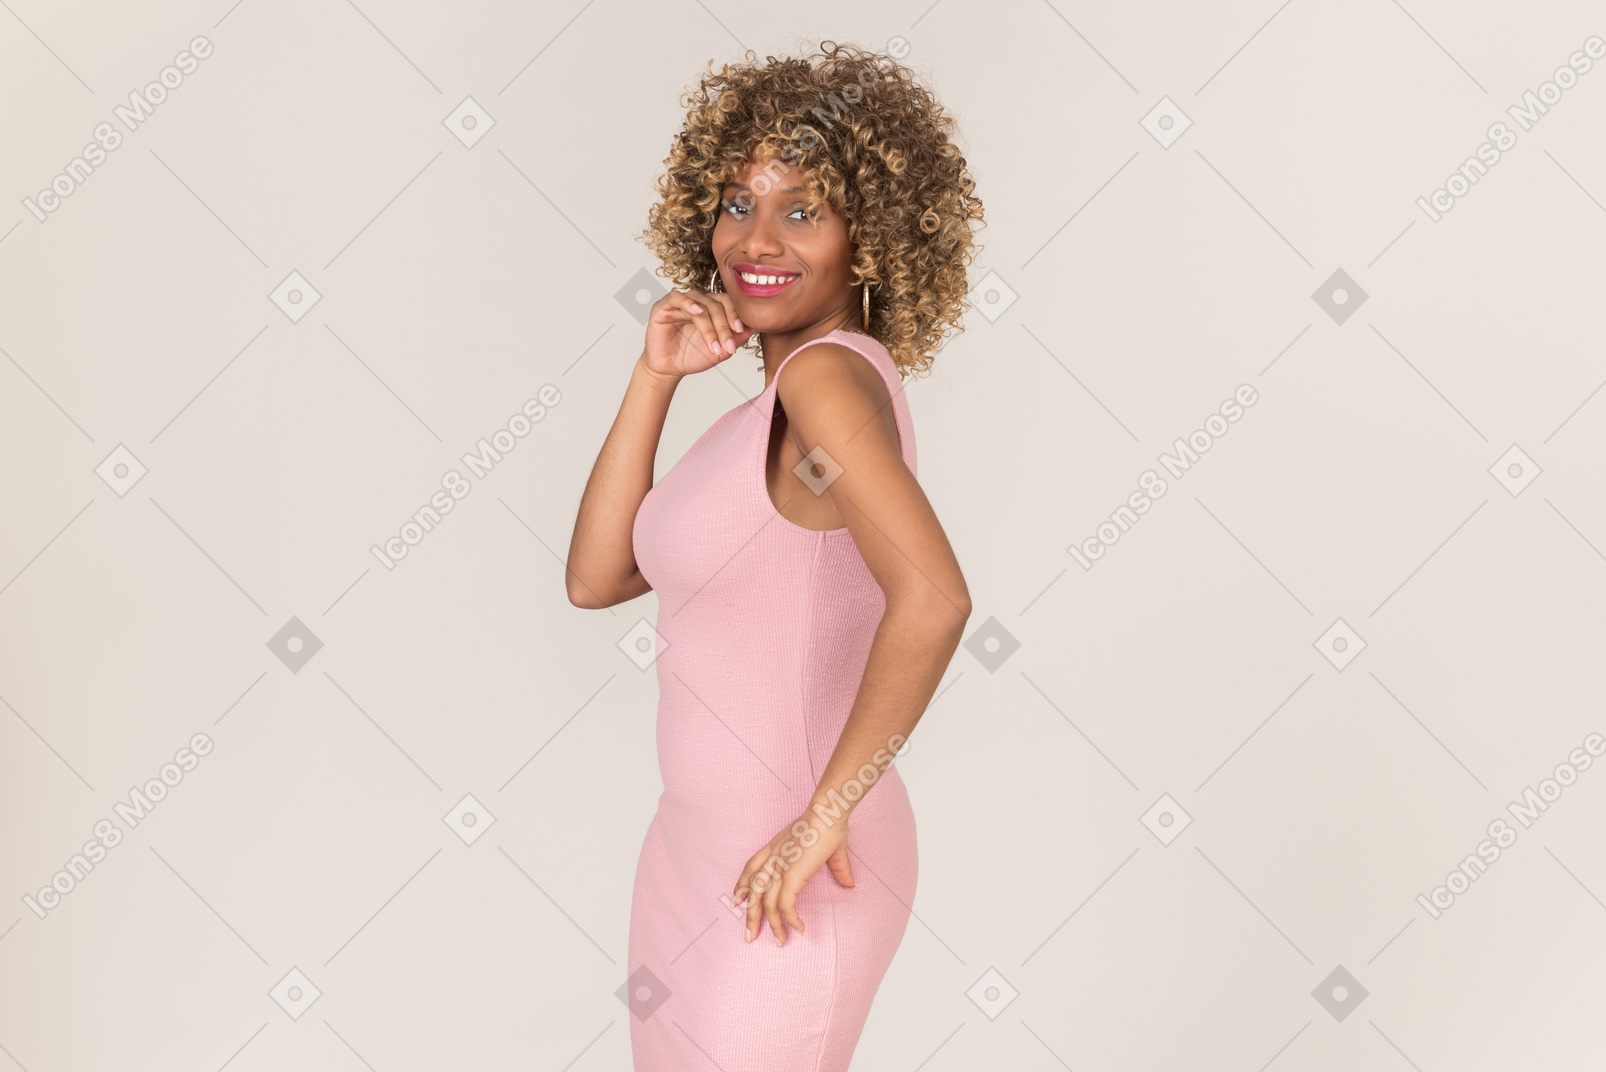 Une femme vêtue d'une robe rose posant pour une photo